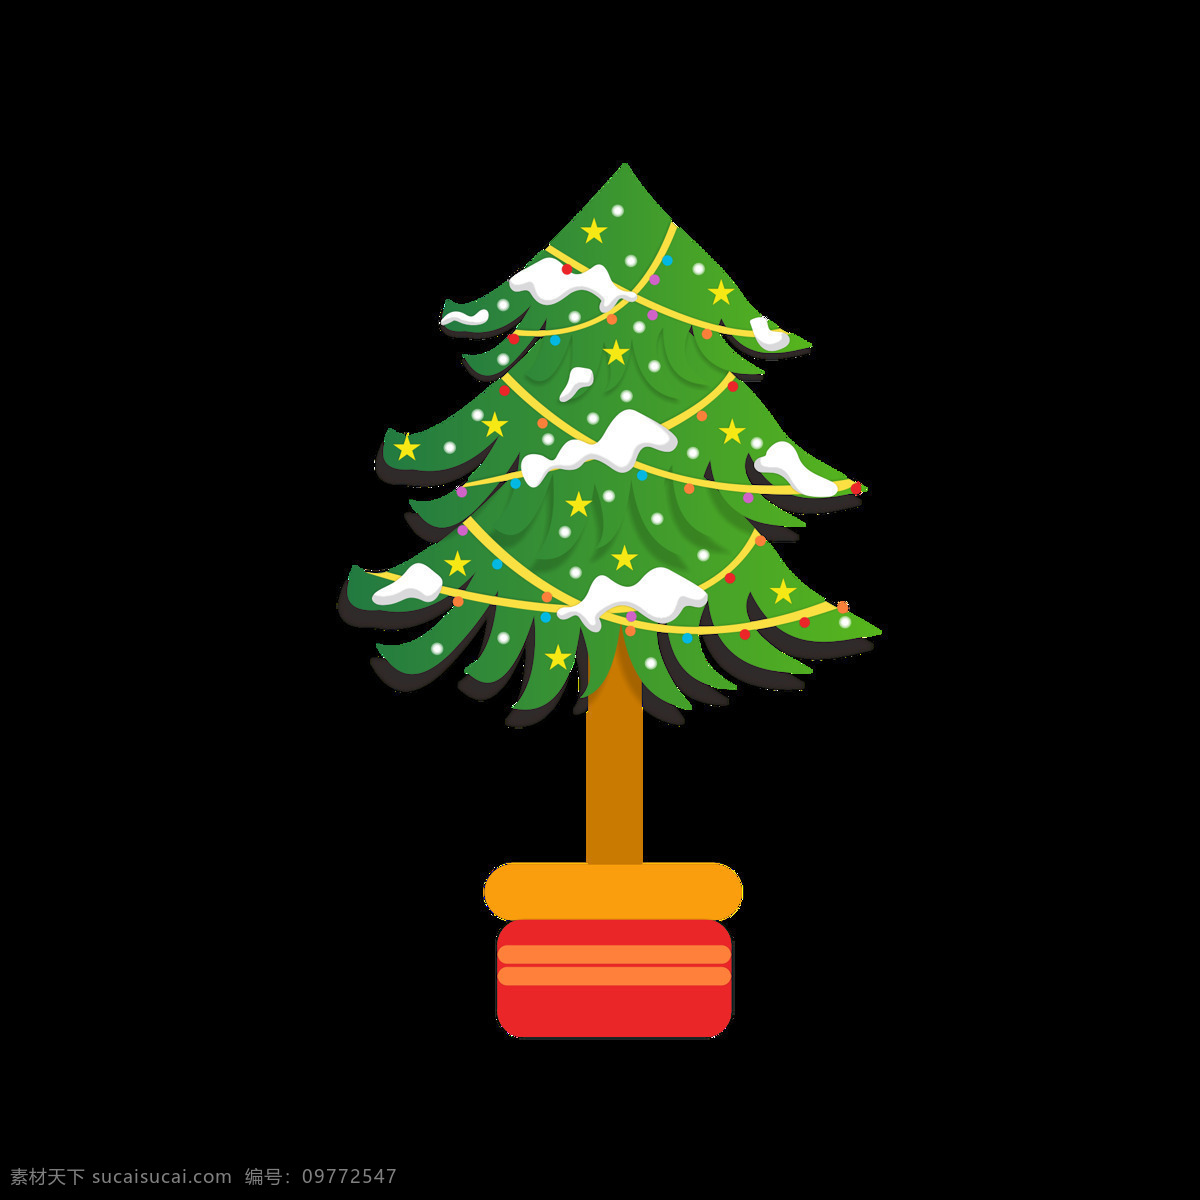 圣诞节 雪 树 元素 卡通 可爱 圣诞树 雪树 节日 元素设计